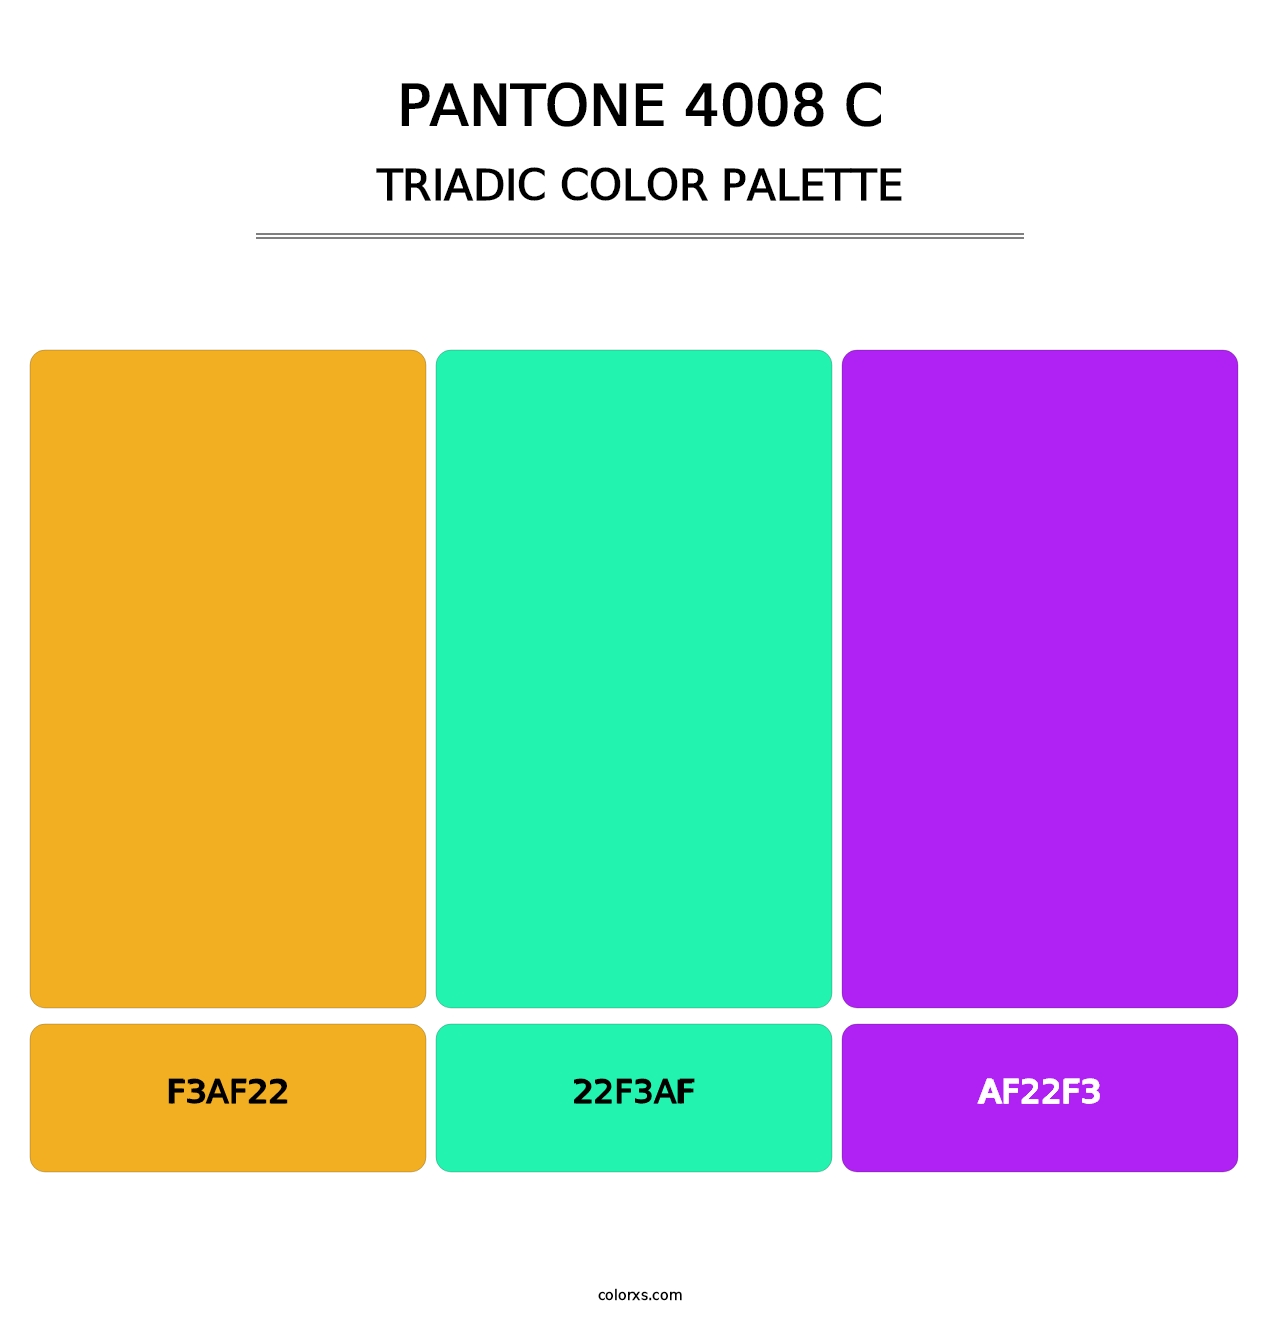 PANTONE 4008 C - Triadic Color Palette